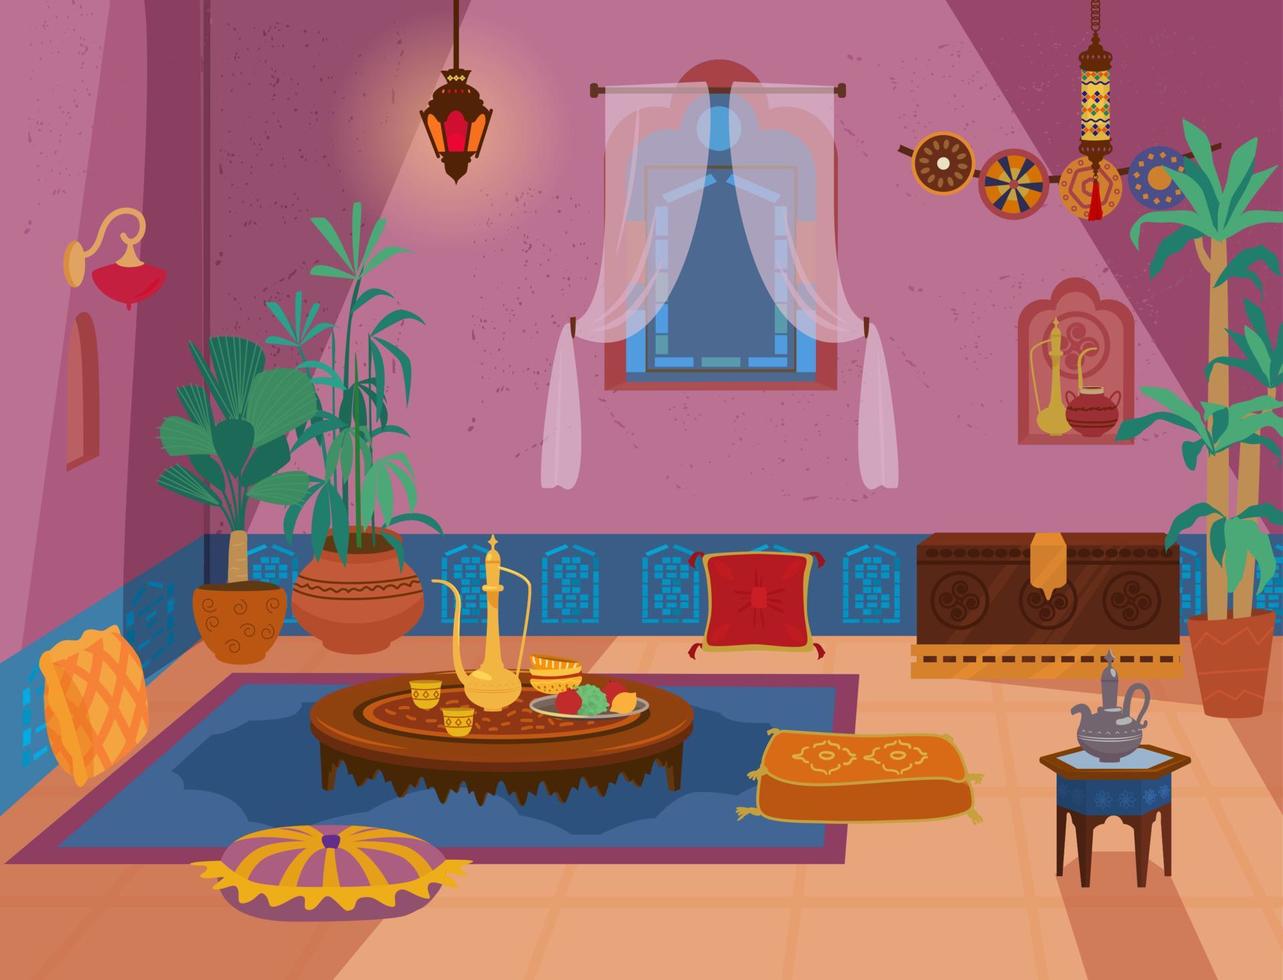 interno tradizionale del soggiorno mediorientale con mobili in legno ed elementi decorativi. vettore del fumetto.